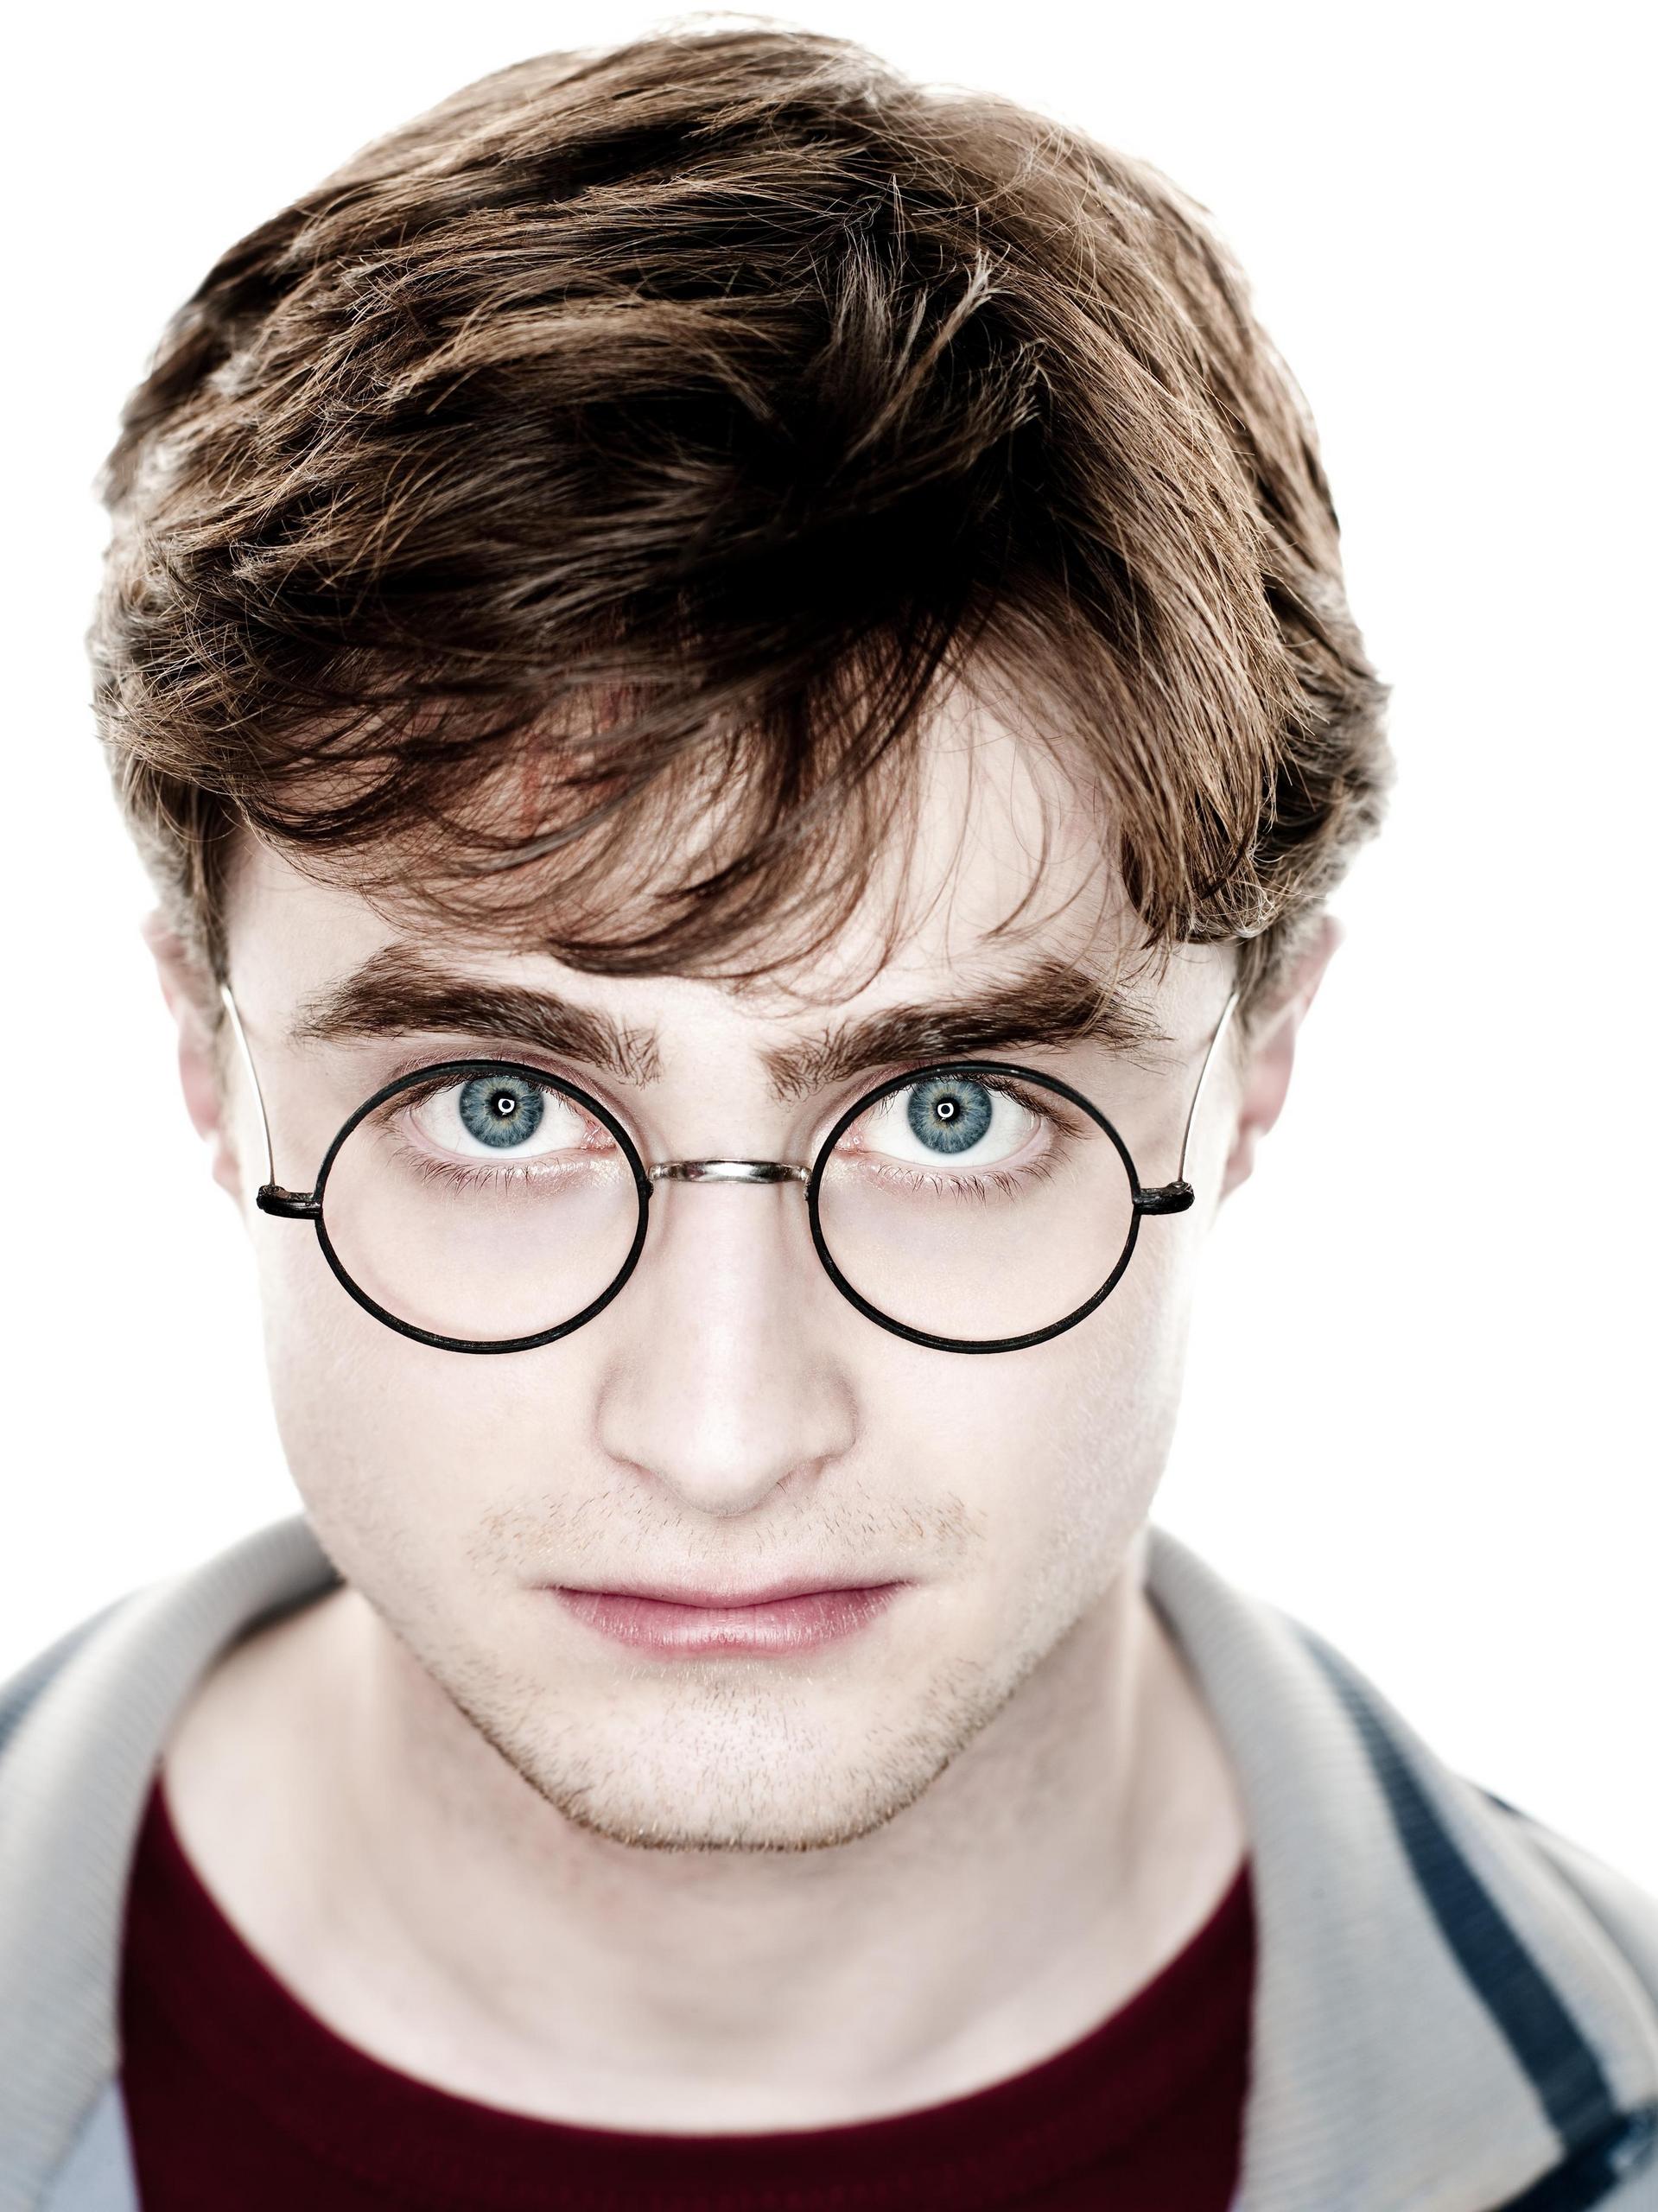 Harry Potter y la Orden del Fénix, Harry Potter Wiki